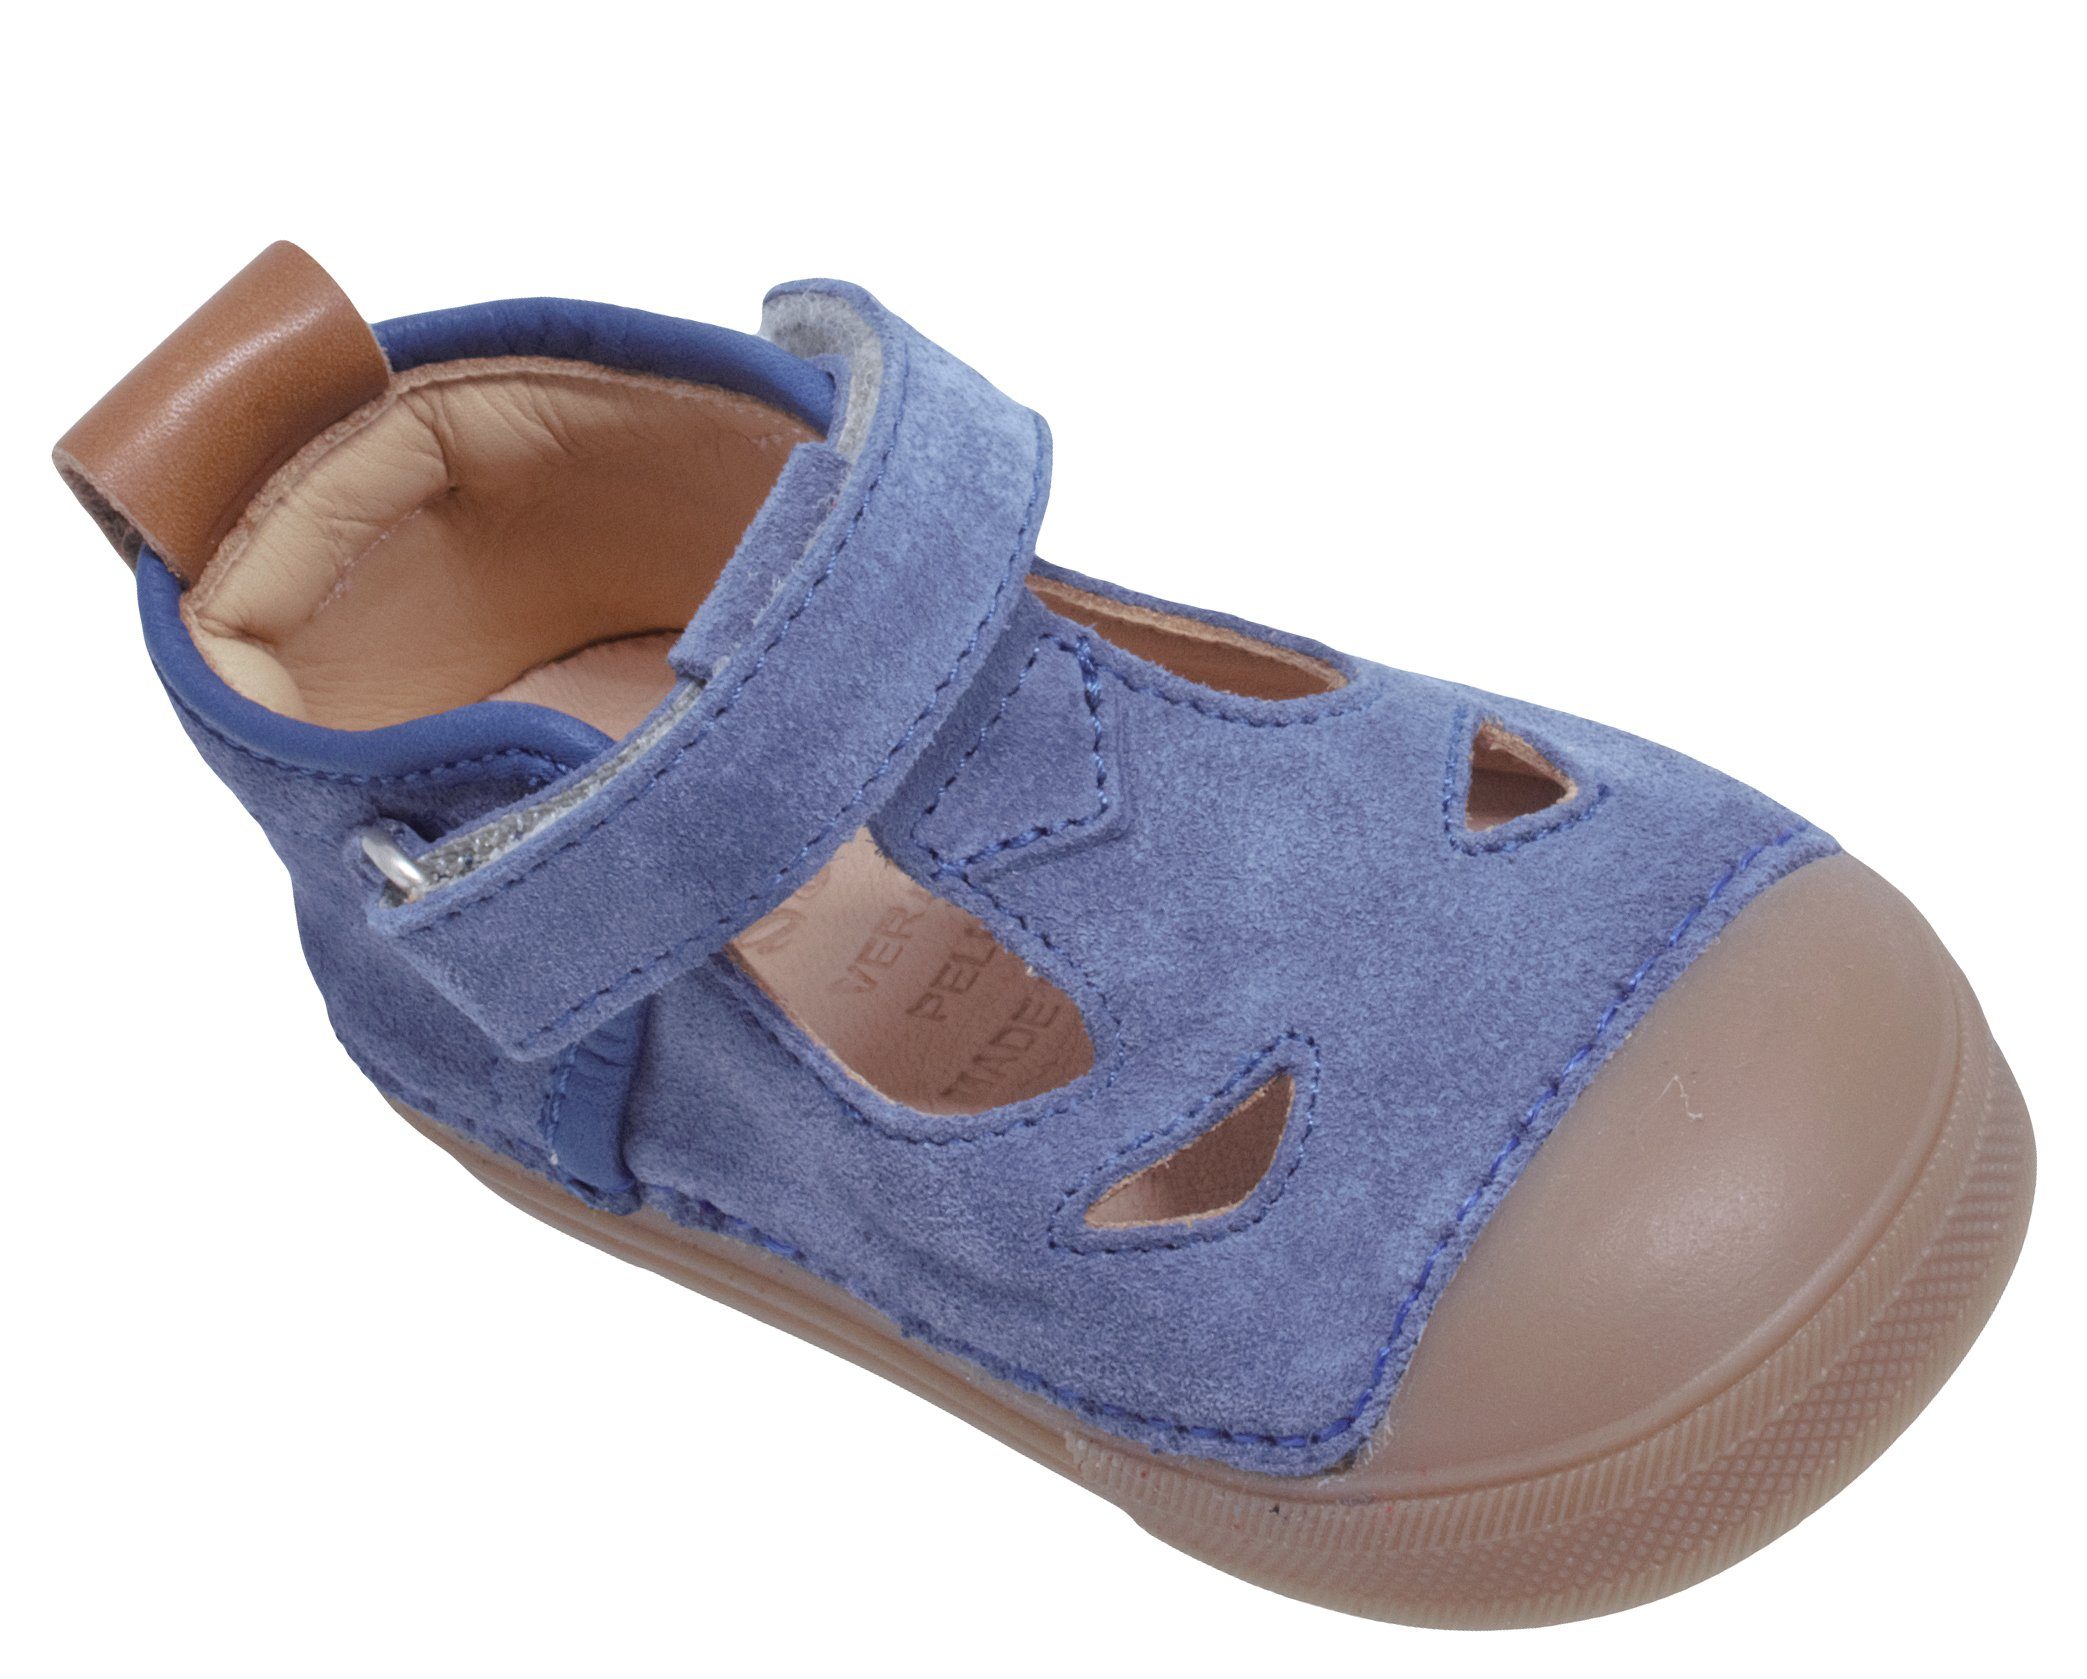 Klett Lauflernschuhe Baby 622 von Sandalette Leder Ocra Sandalen Blau Ocra